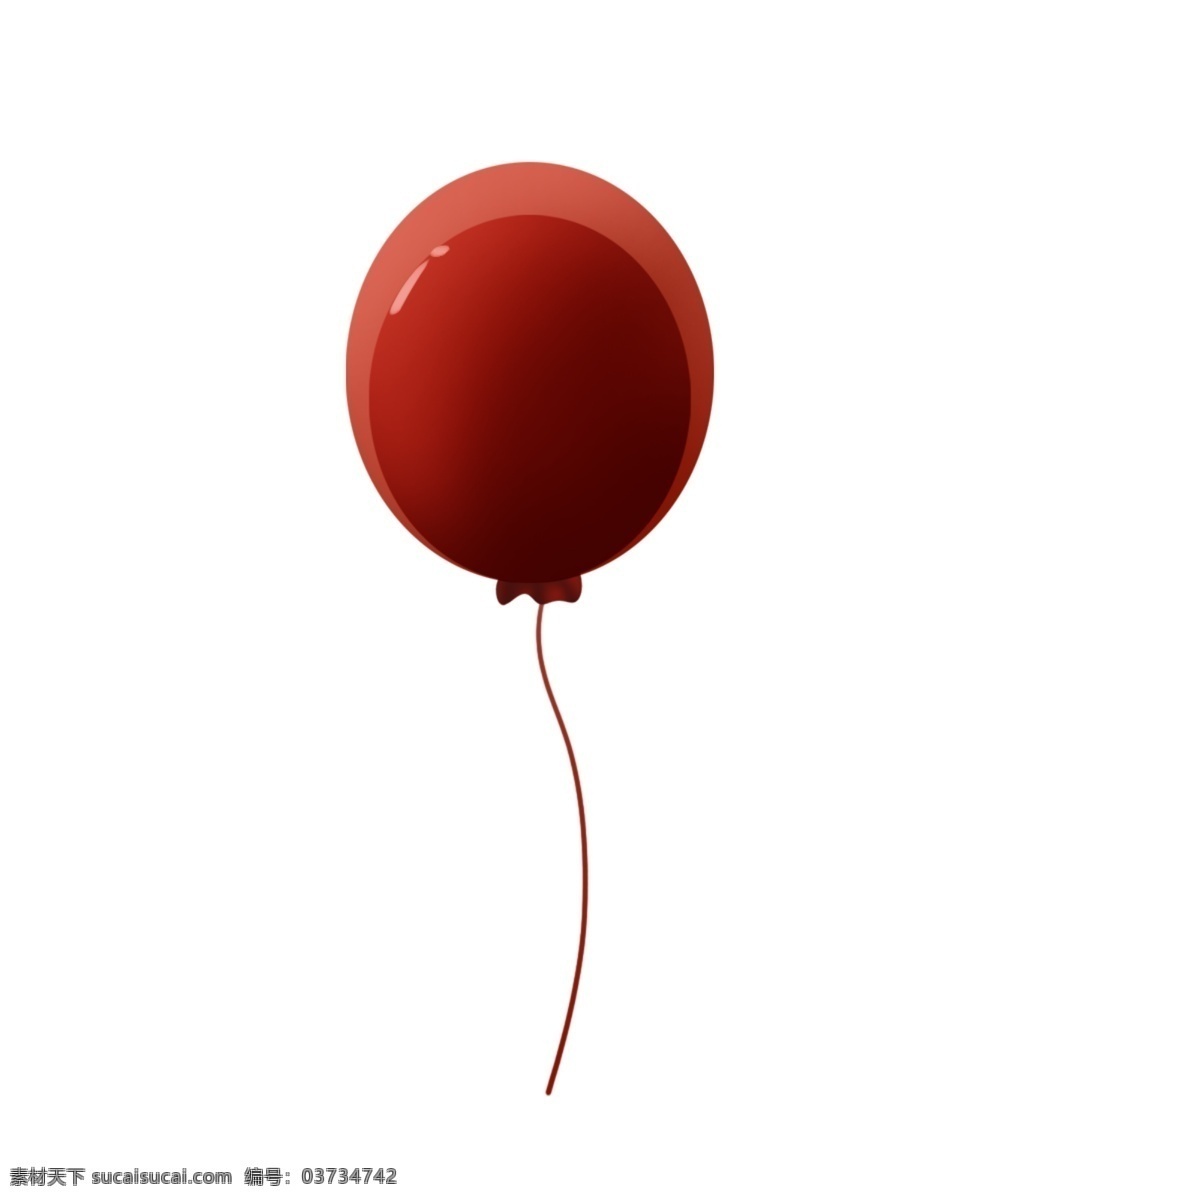 双层气球 红色气球 儿童节素材 七夕节素材 磨砂气球 节日庆典 周年庆 庆典 婚礼素材 婚庆素材 常用 海报 小